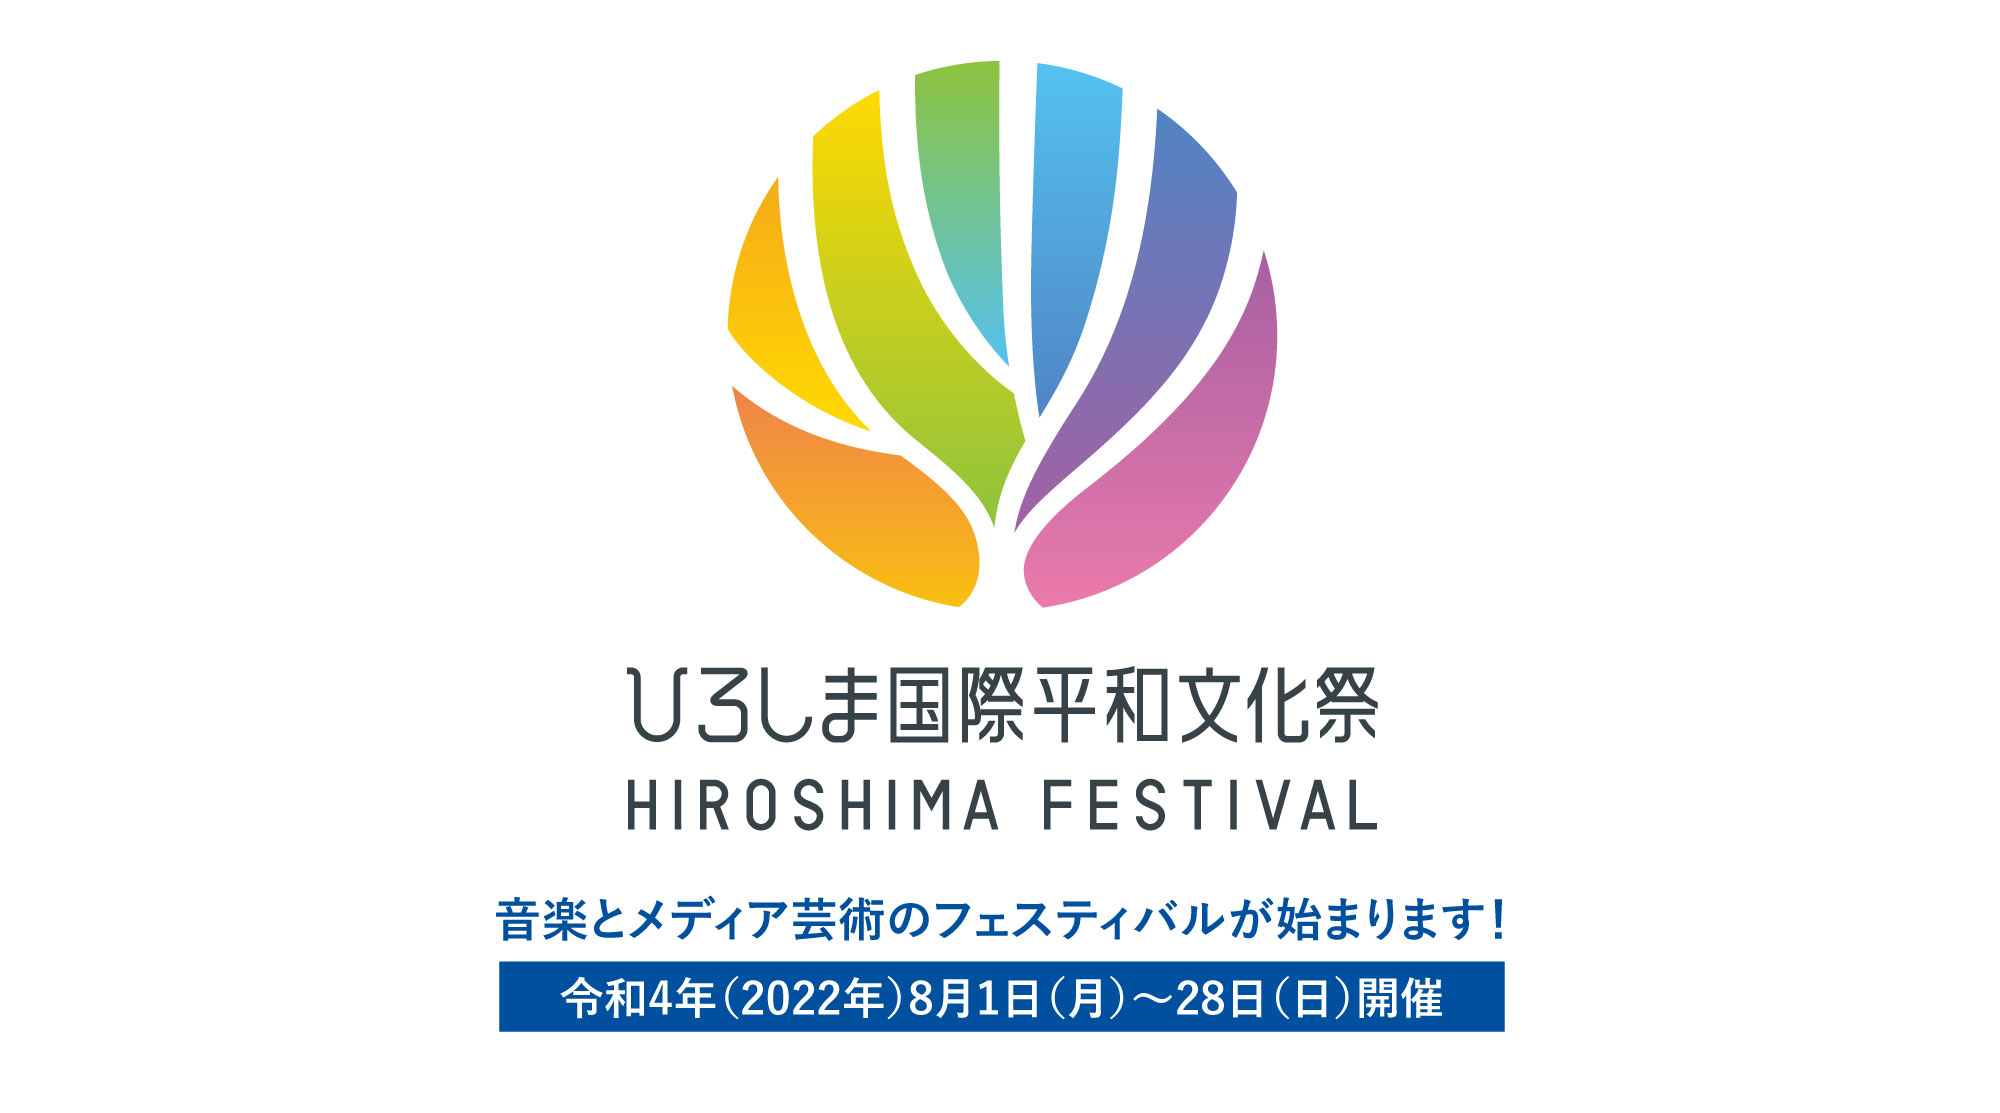 ひろしま国際平和文化祭 HIROSHIMA FESTIVAL